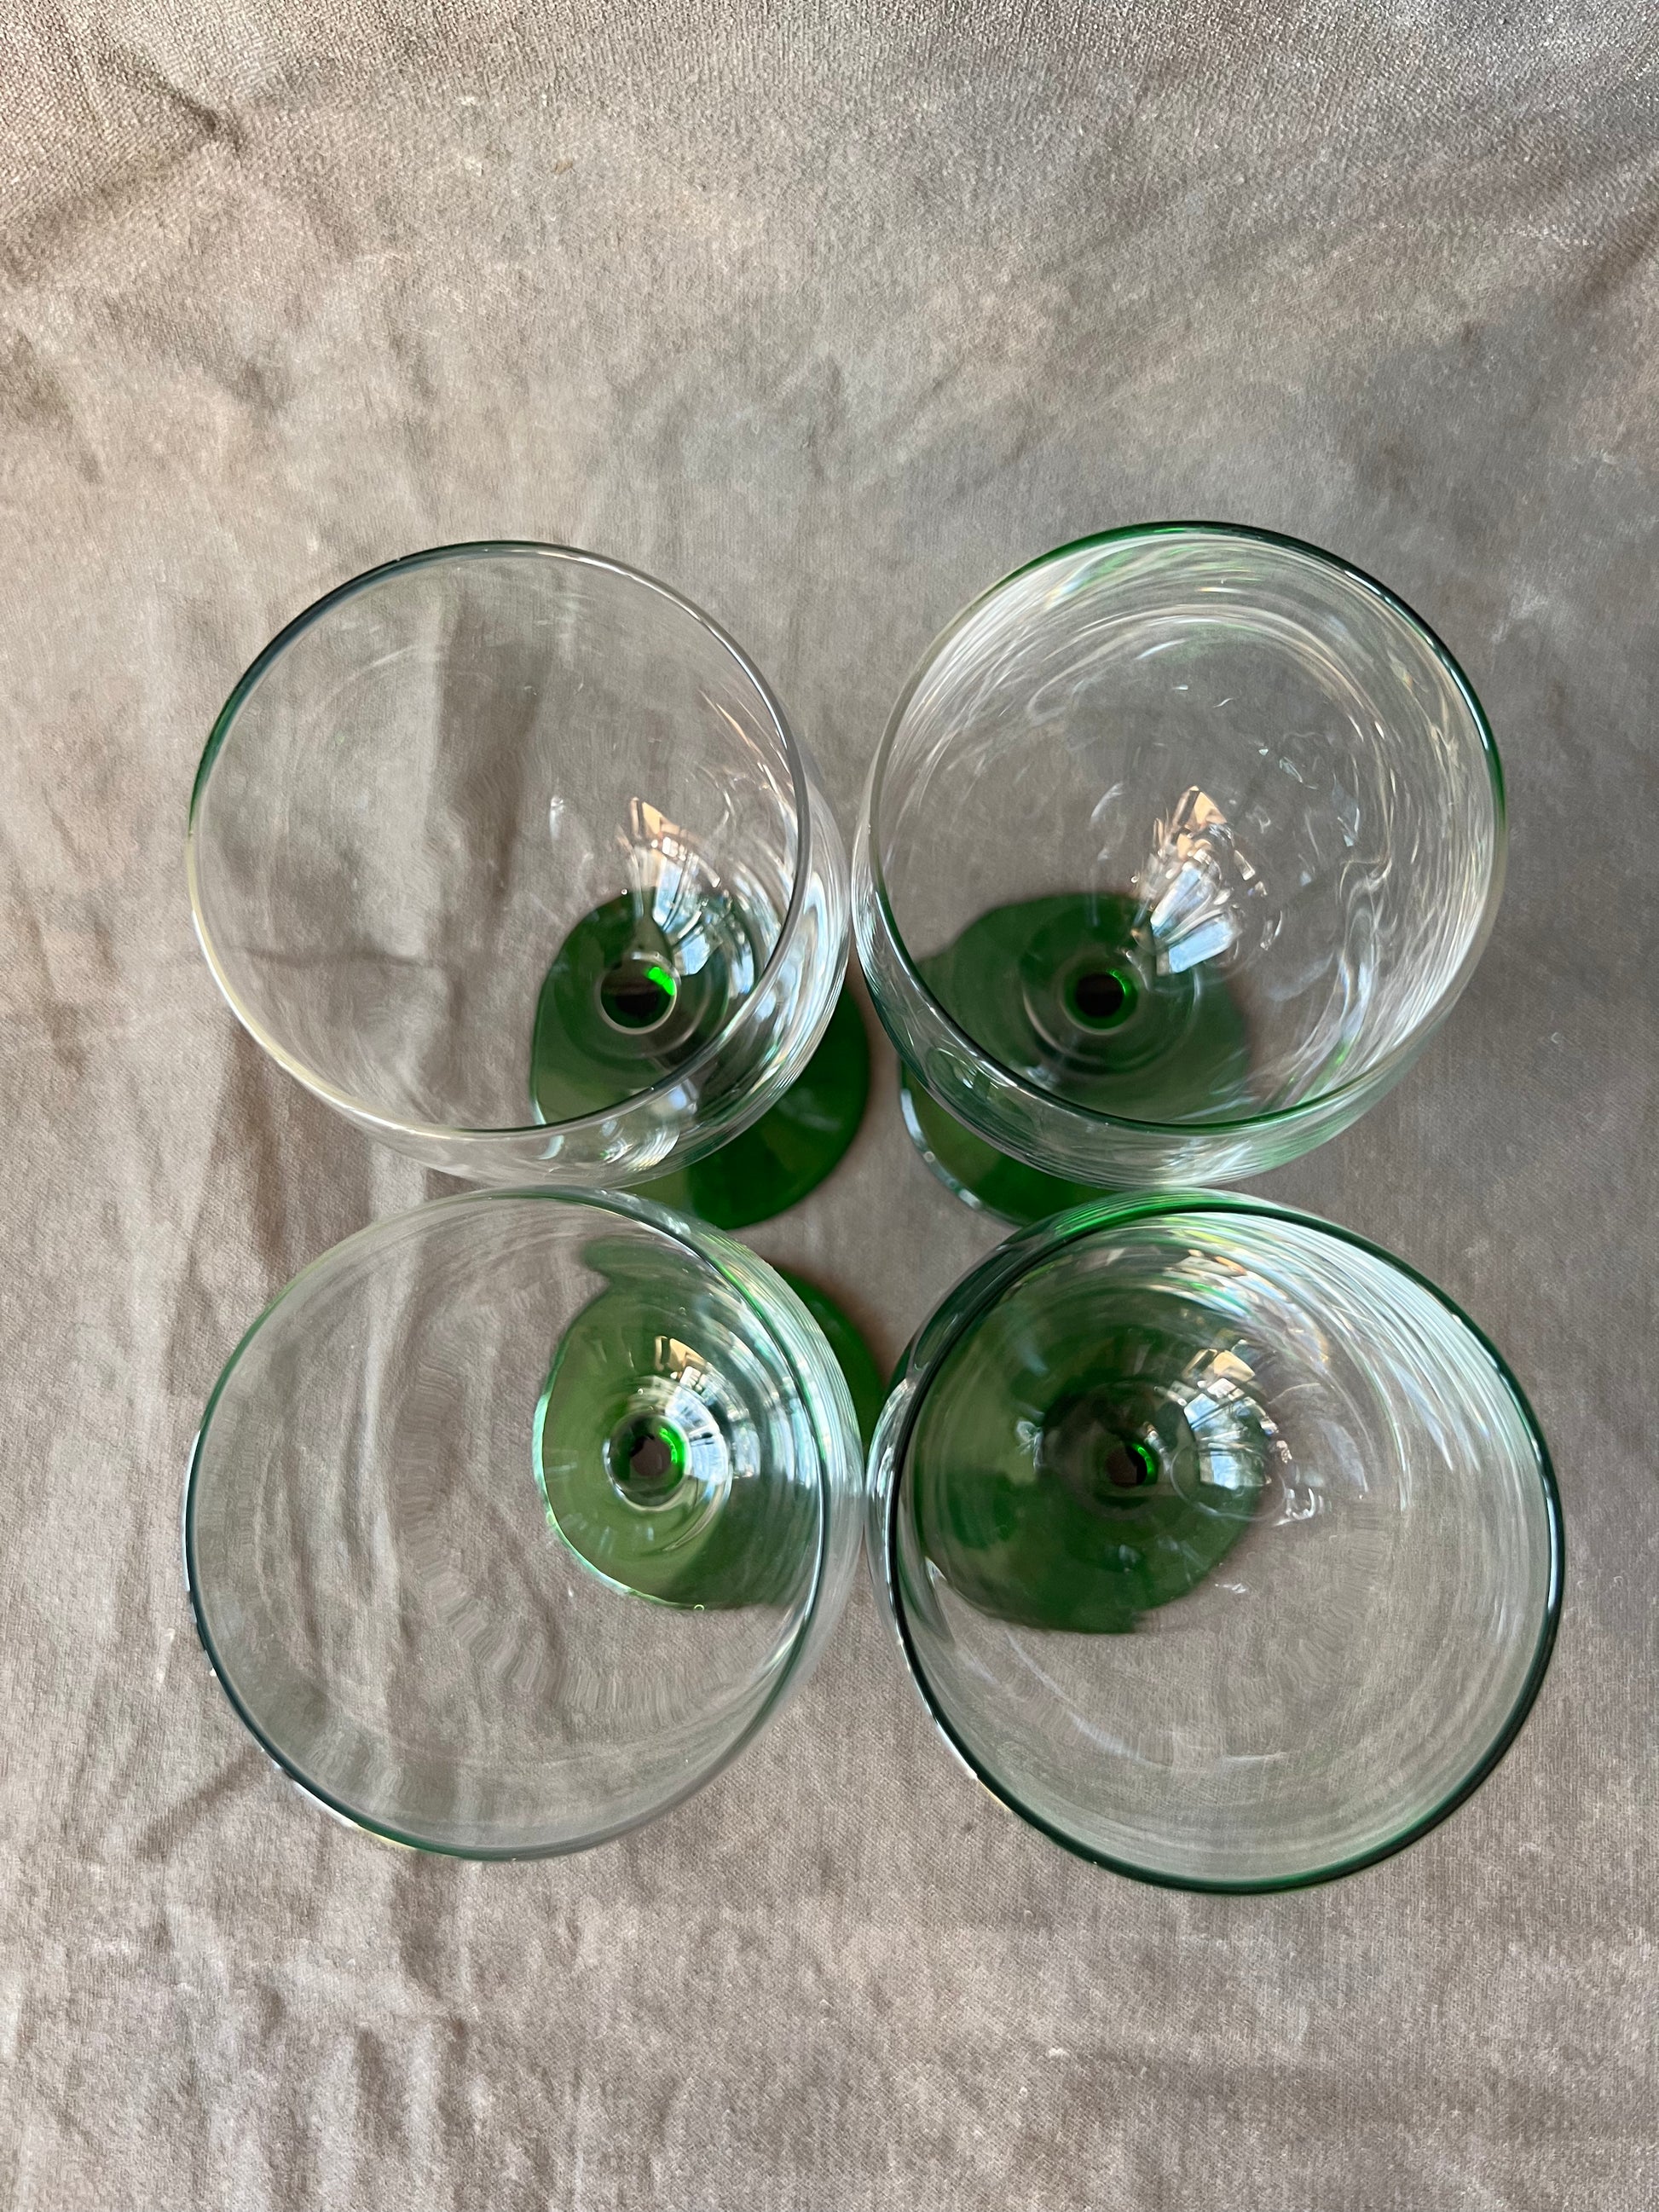 Mid 20th Century 4 Light Green Stemmed Wine Glasses - Set of 4